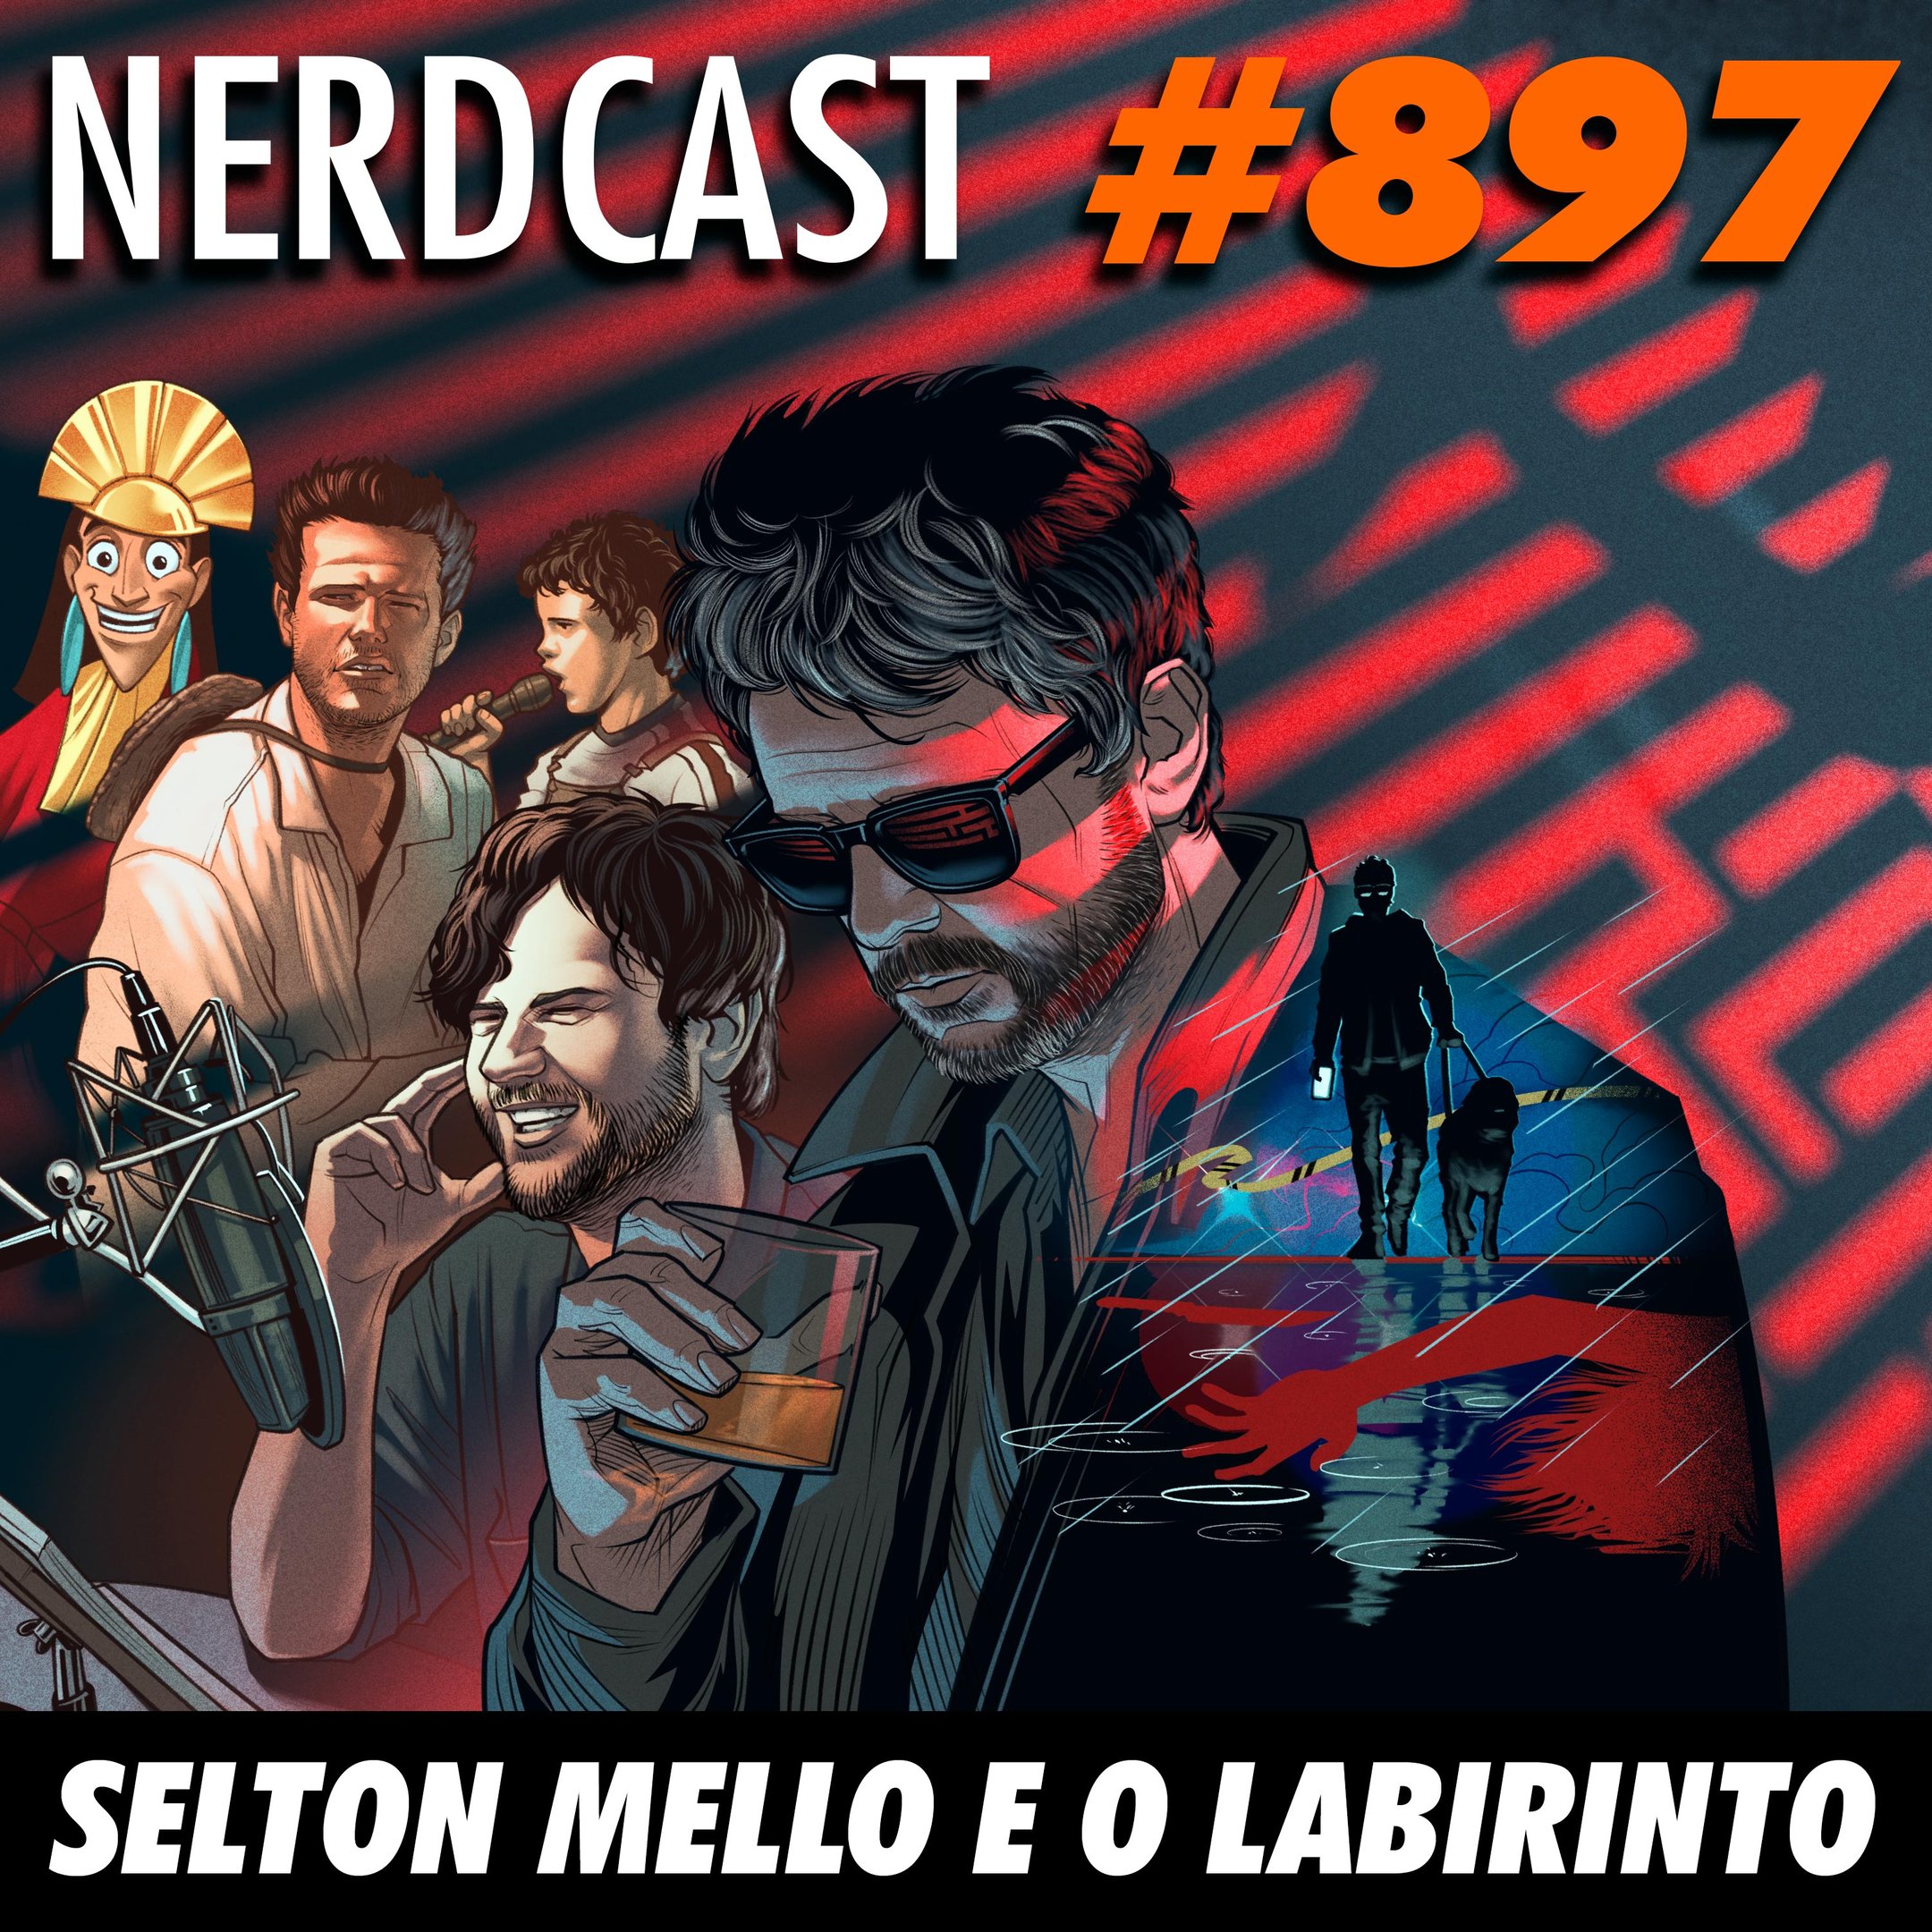 NerdCast 897 - Selton Mello e o Labirinto